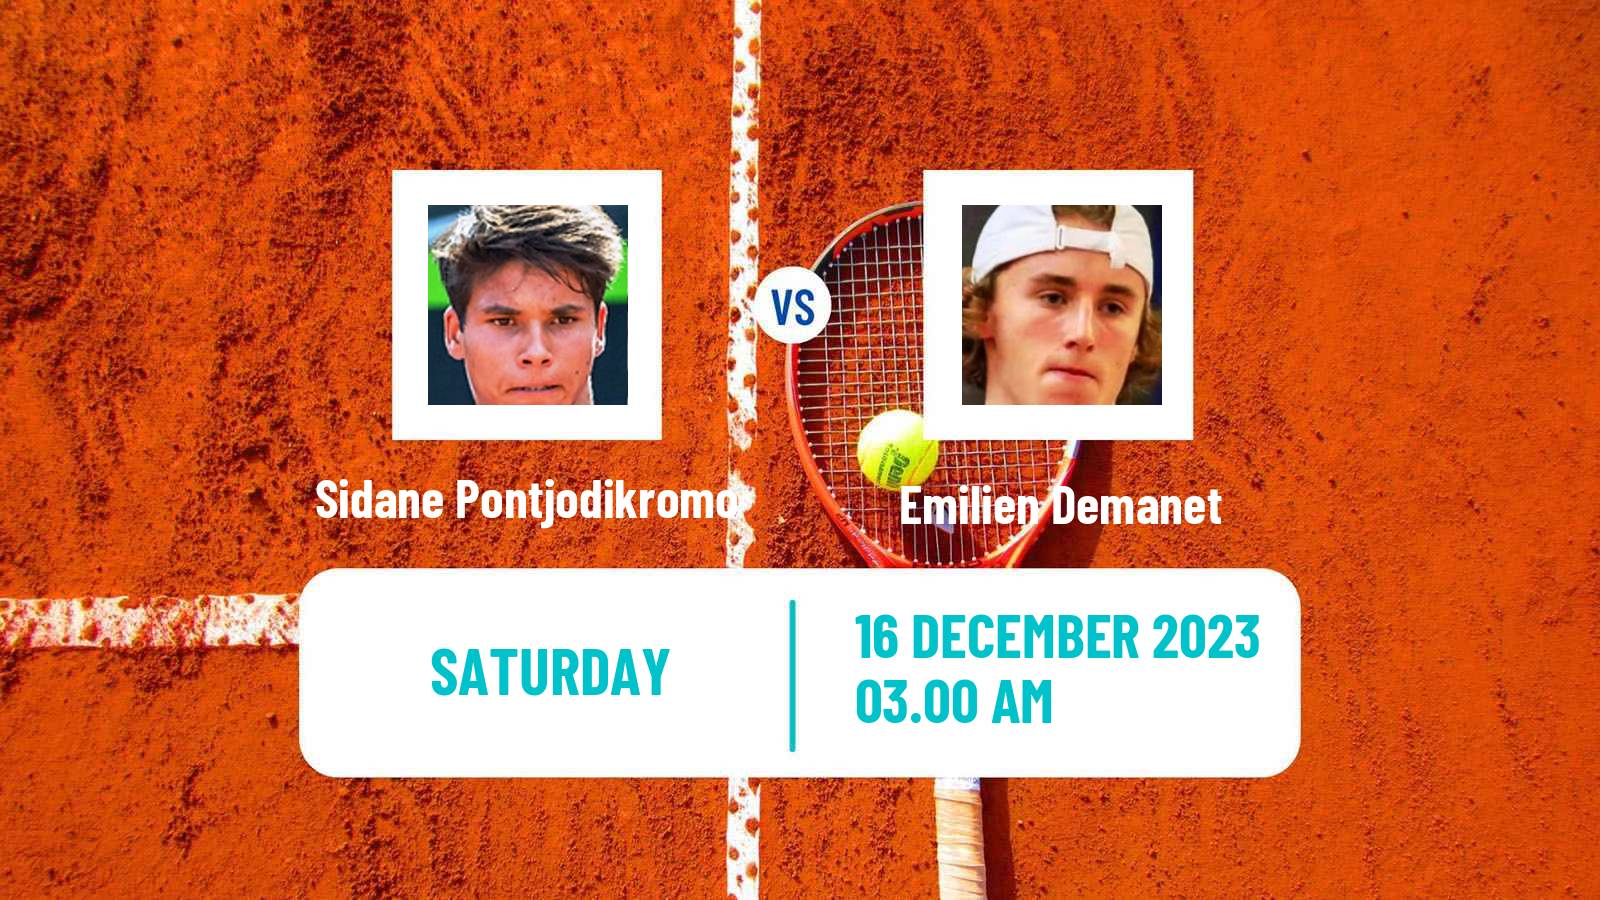 Tennis ITF M15 Zahra 3 Men Sidane Pontjodikromo - Emilien Demanet